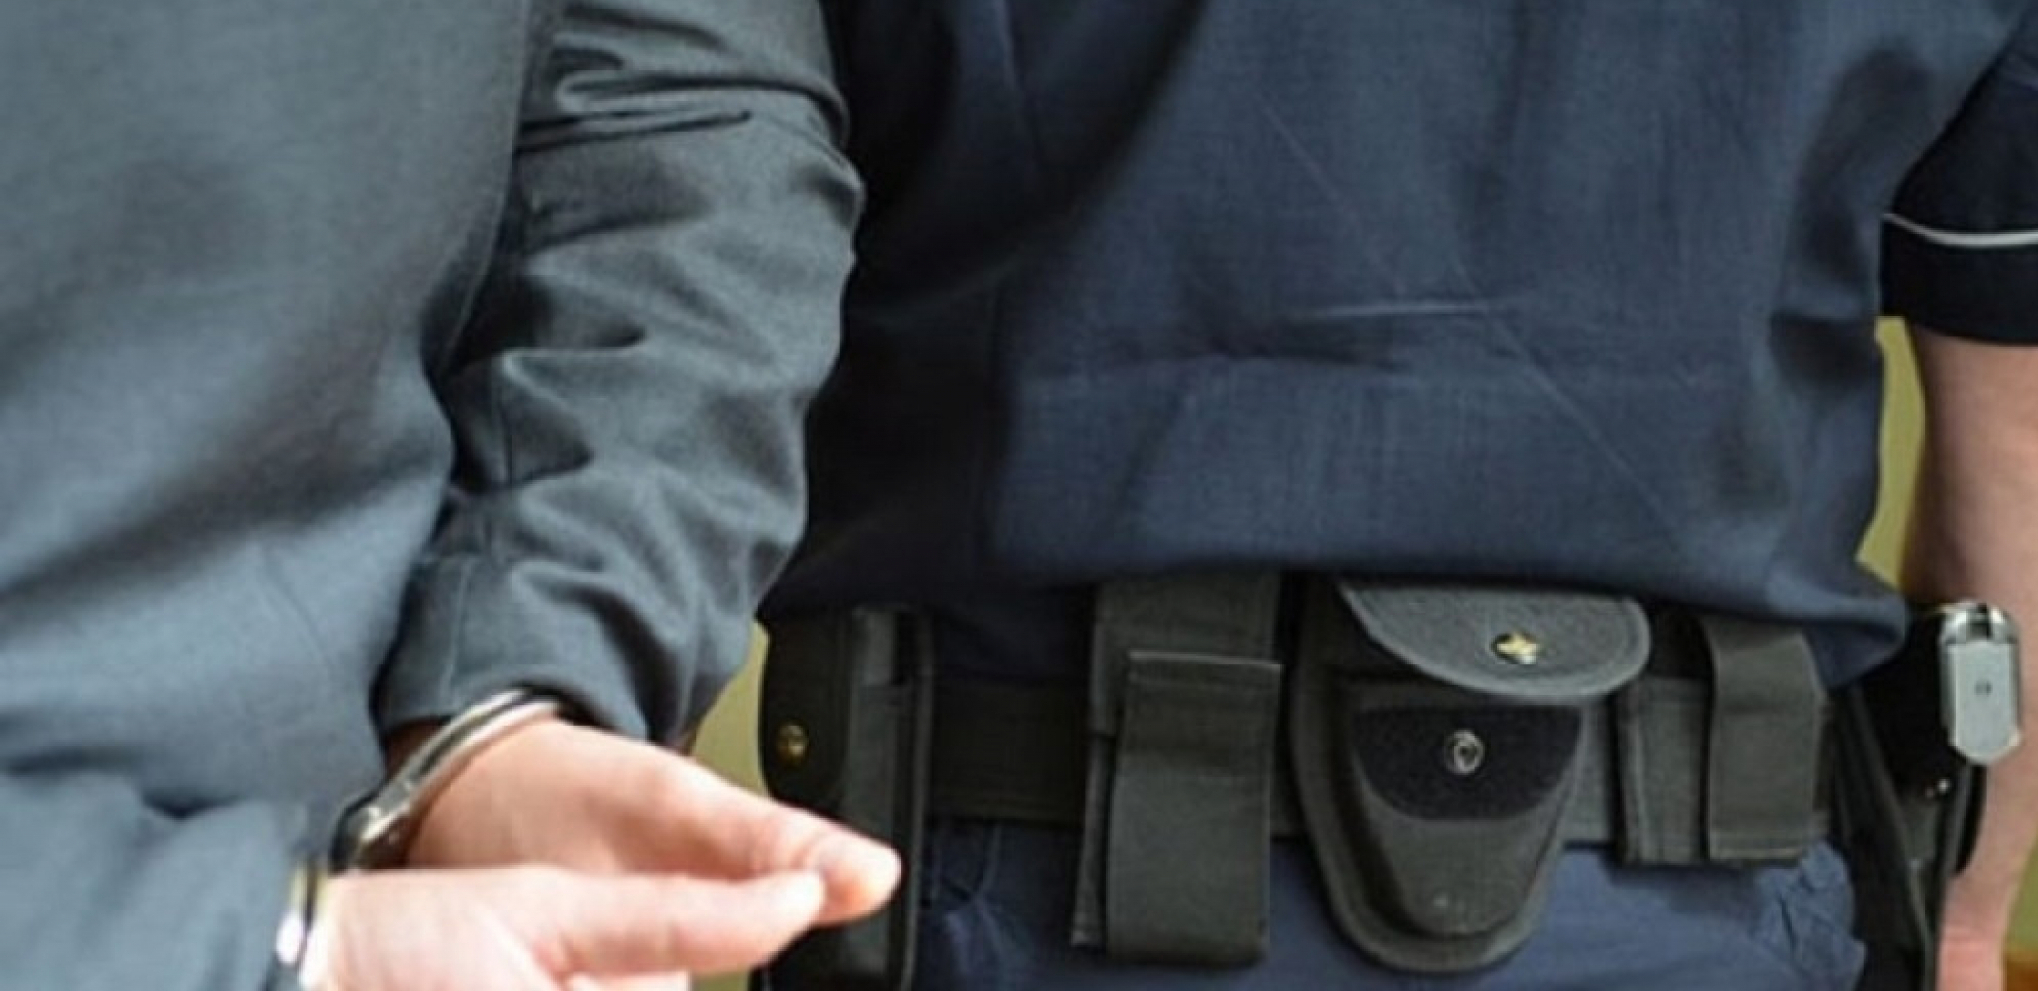 ZAPLENJENO VIŠE OD 50 KILOGRAMA MARIHUANE Uhapšen diler iz Čajetine, policija našla drogu u gepeku